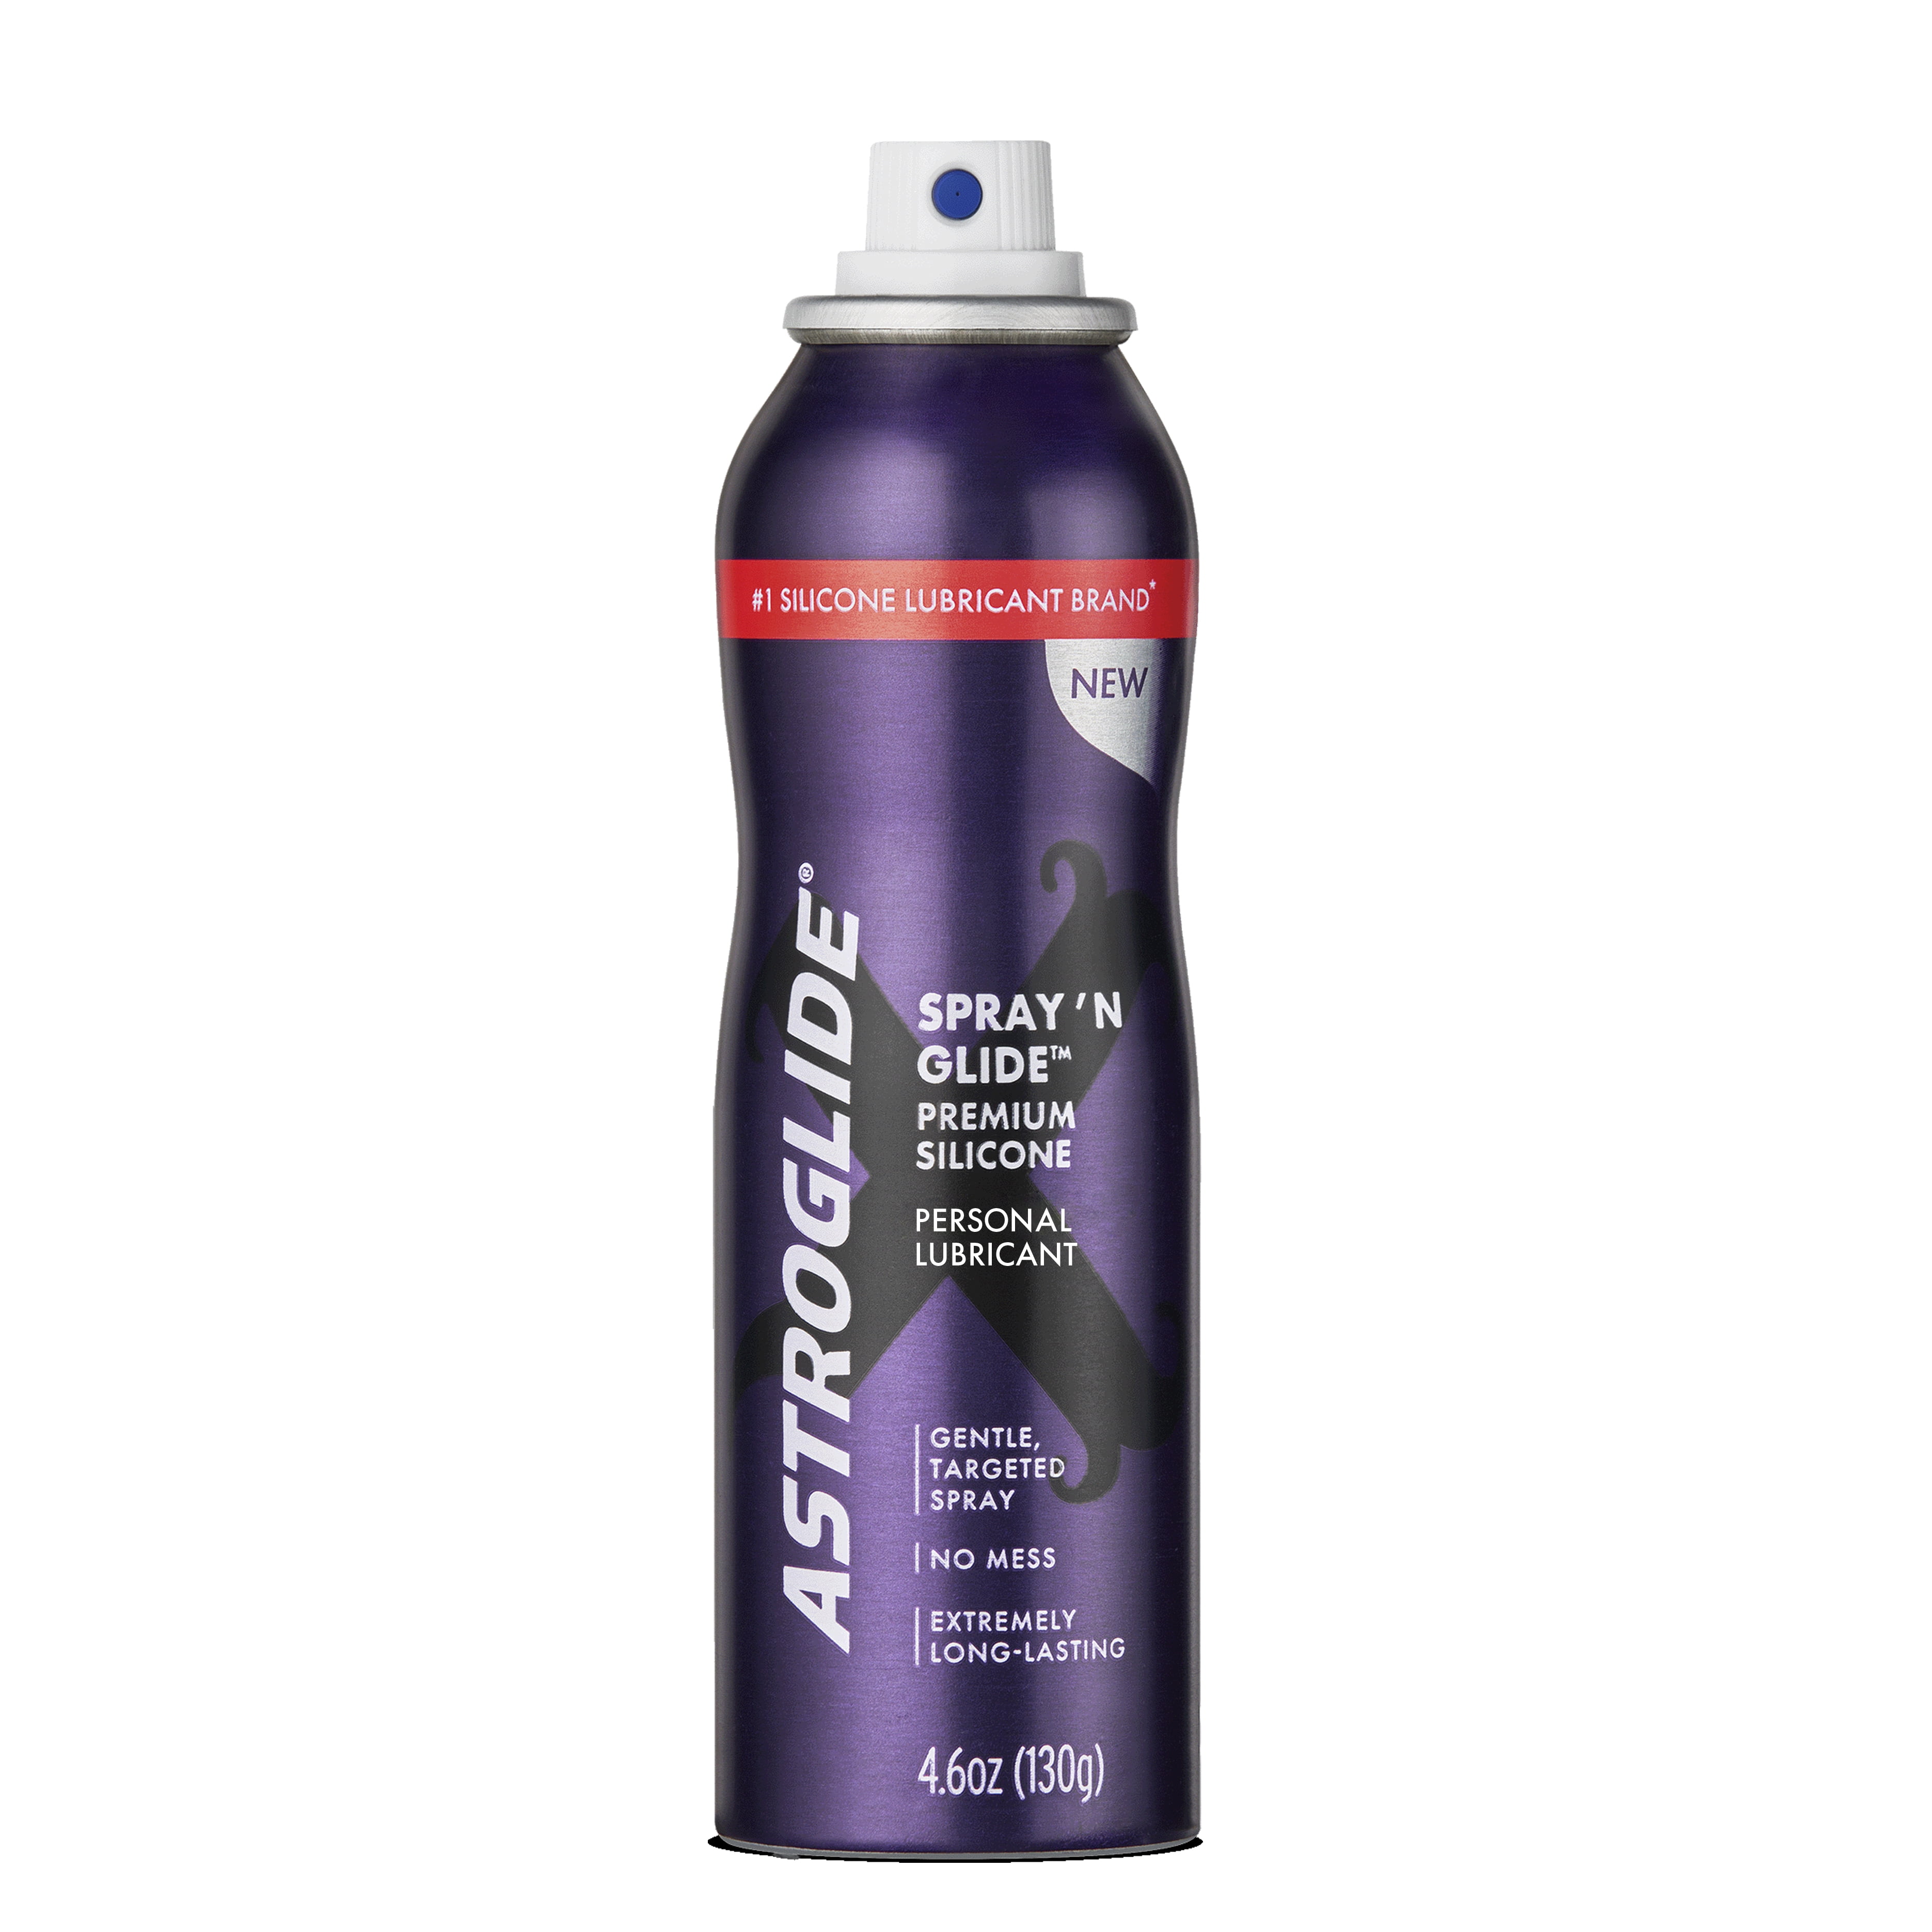 Silicone Spray Lube 12 Oz. Aerosol Can from MOPAR